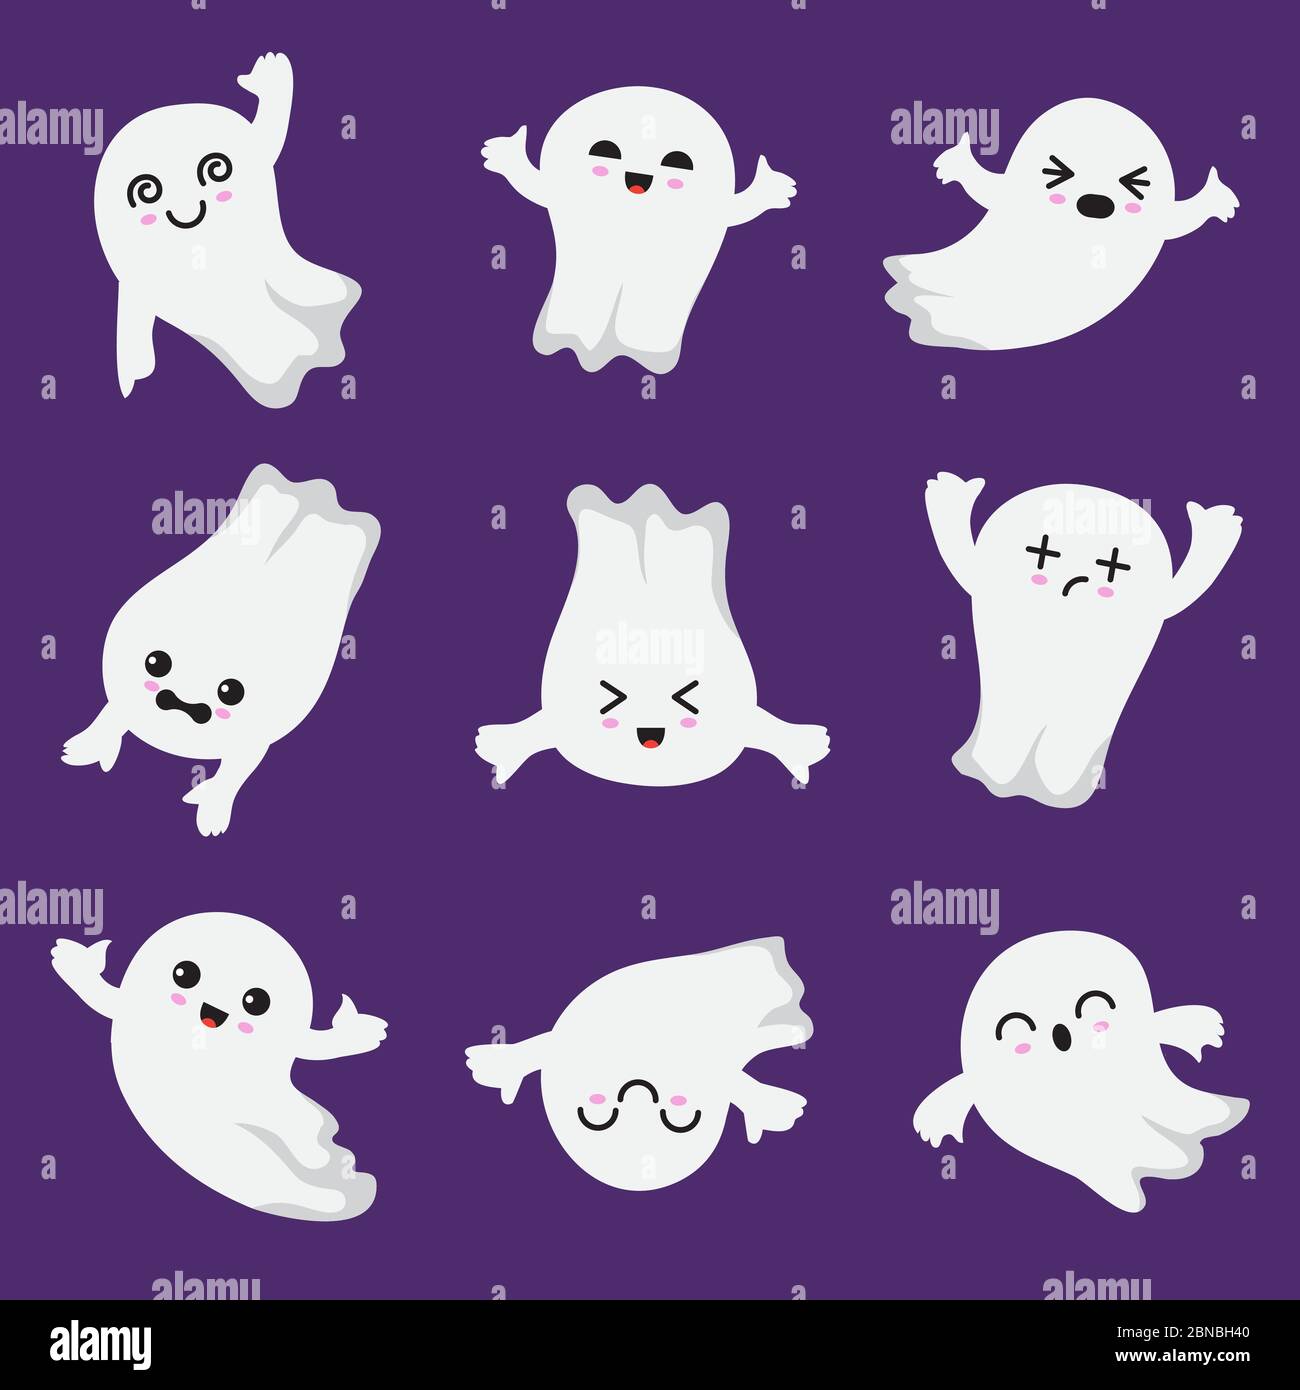 Un adorable fantôme kawaii. Halloween : personnages effrayants et fantômes. Collection de vecteurs Ghost en style japonais. Illustration de l'halloween fantôme envolent, mystérieuse mouche fantôme Illustration de Vecteur